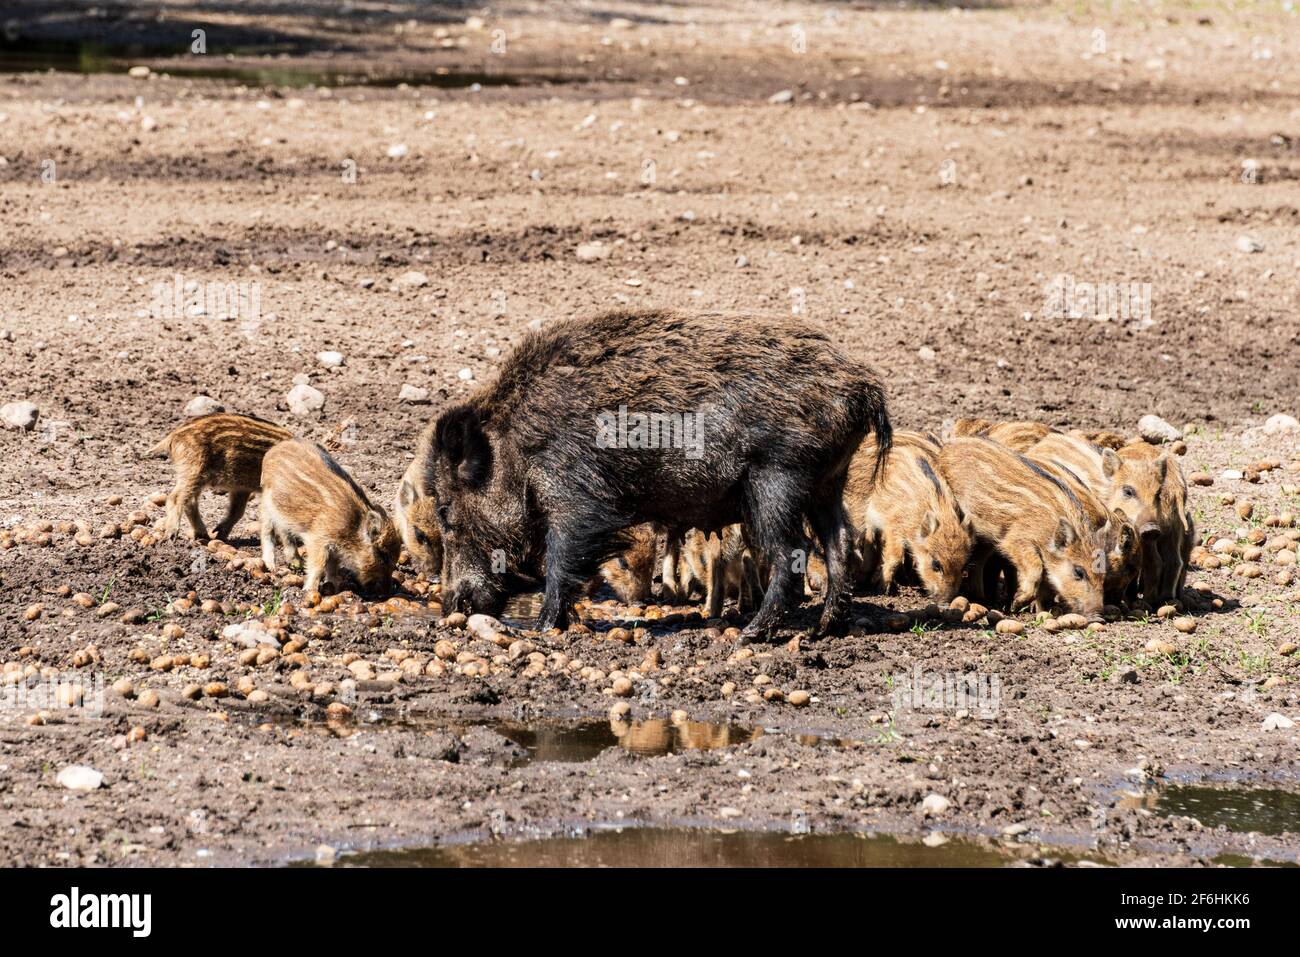 Der Erlebnis Wald Trappenkamp bietet auf mehr als 100 Hektar Wildgehege und Erlebnispfade ein einmaliges Naturerlebnis, hier eine Rotte Wildschweine Stock Photo